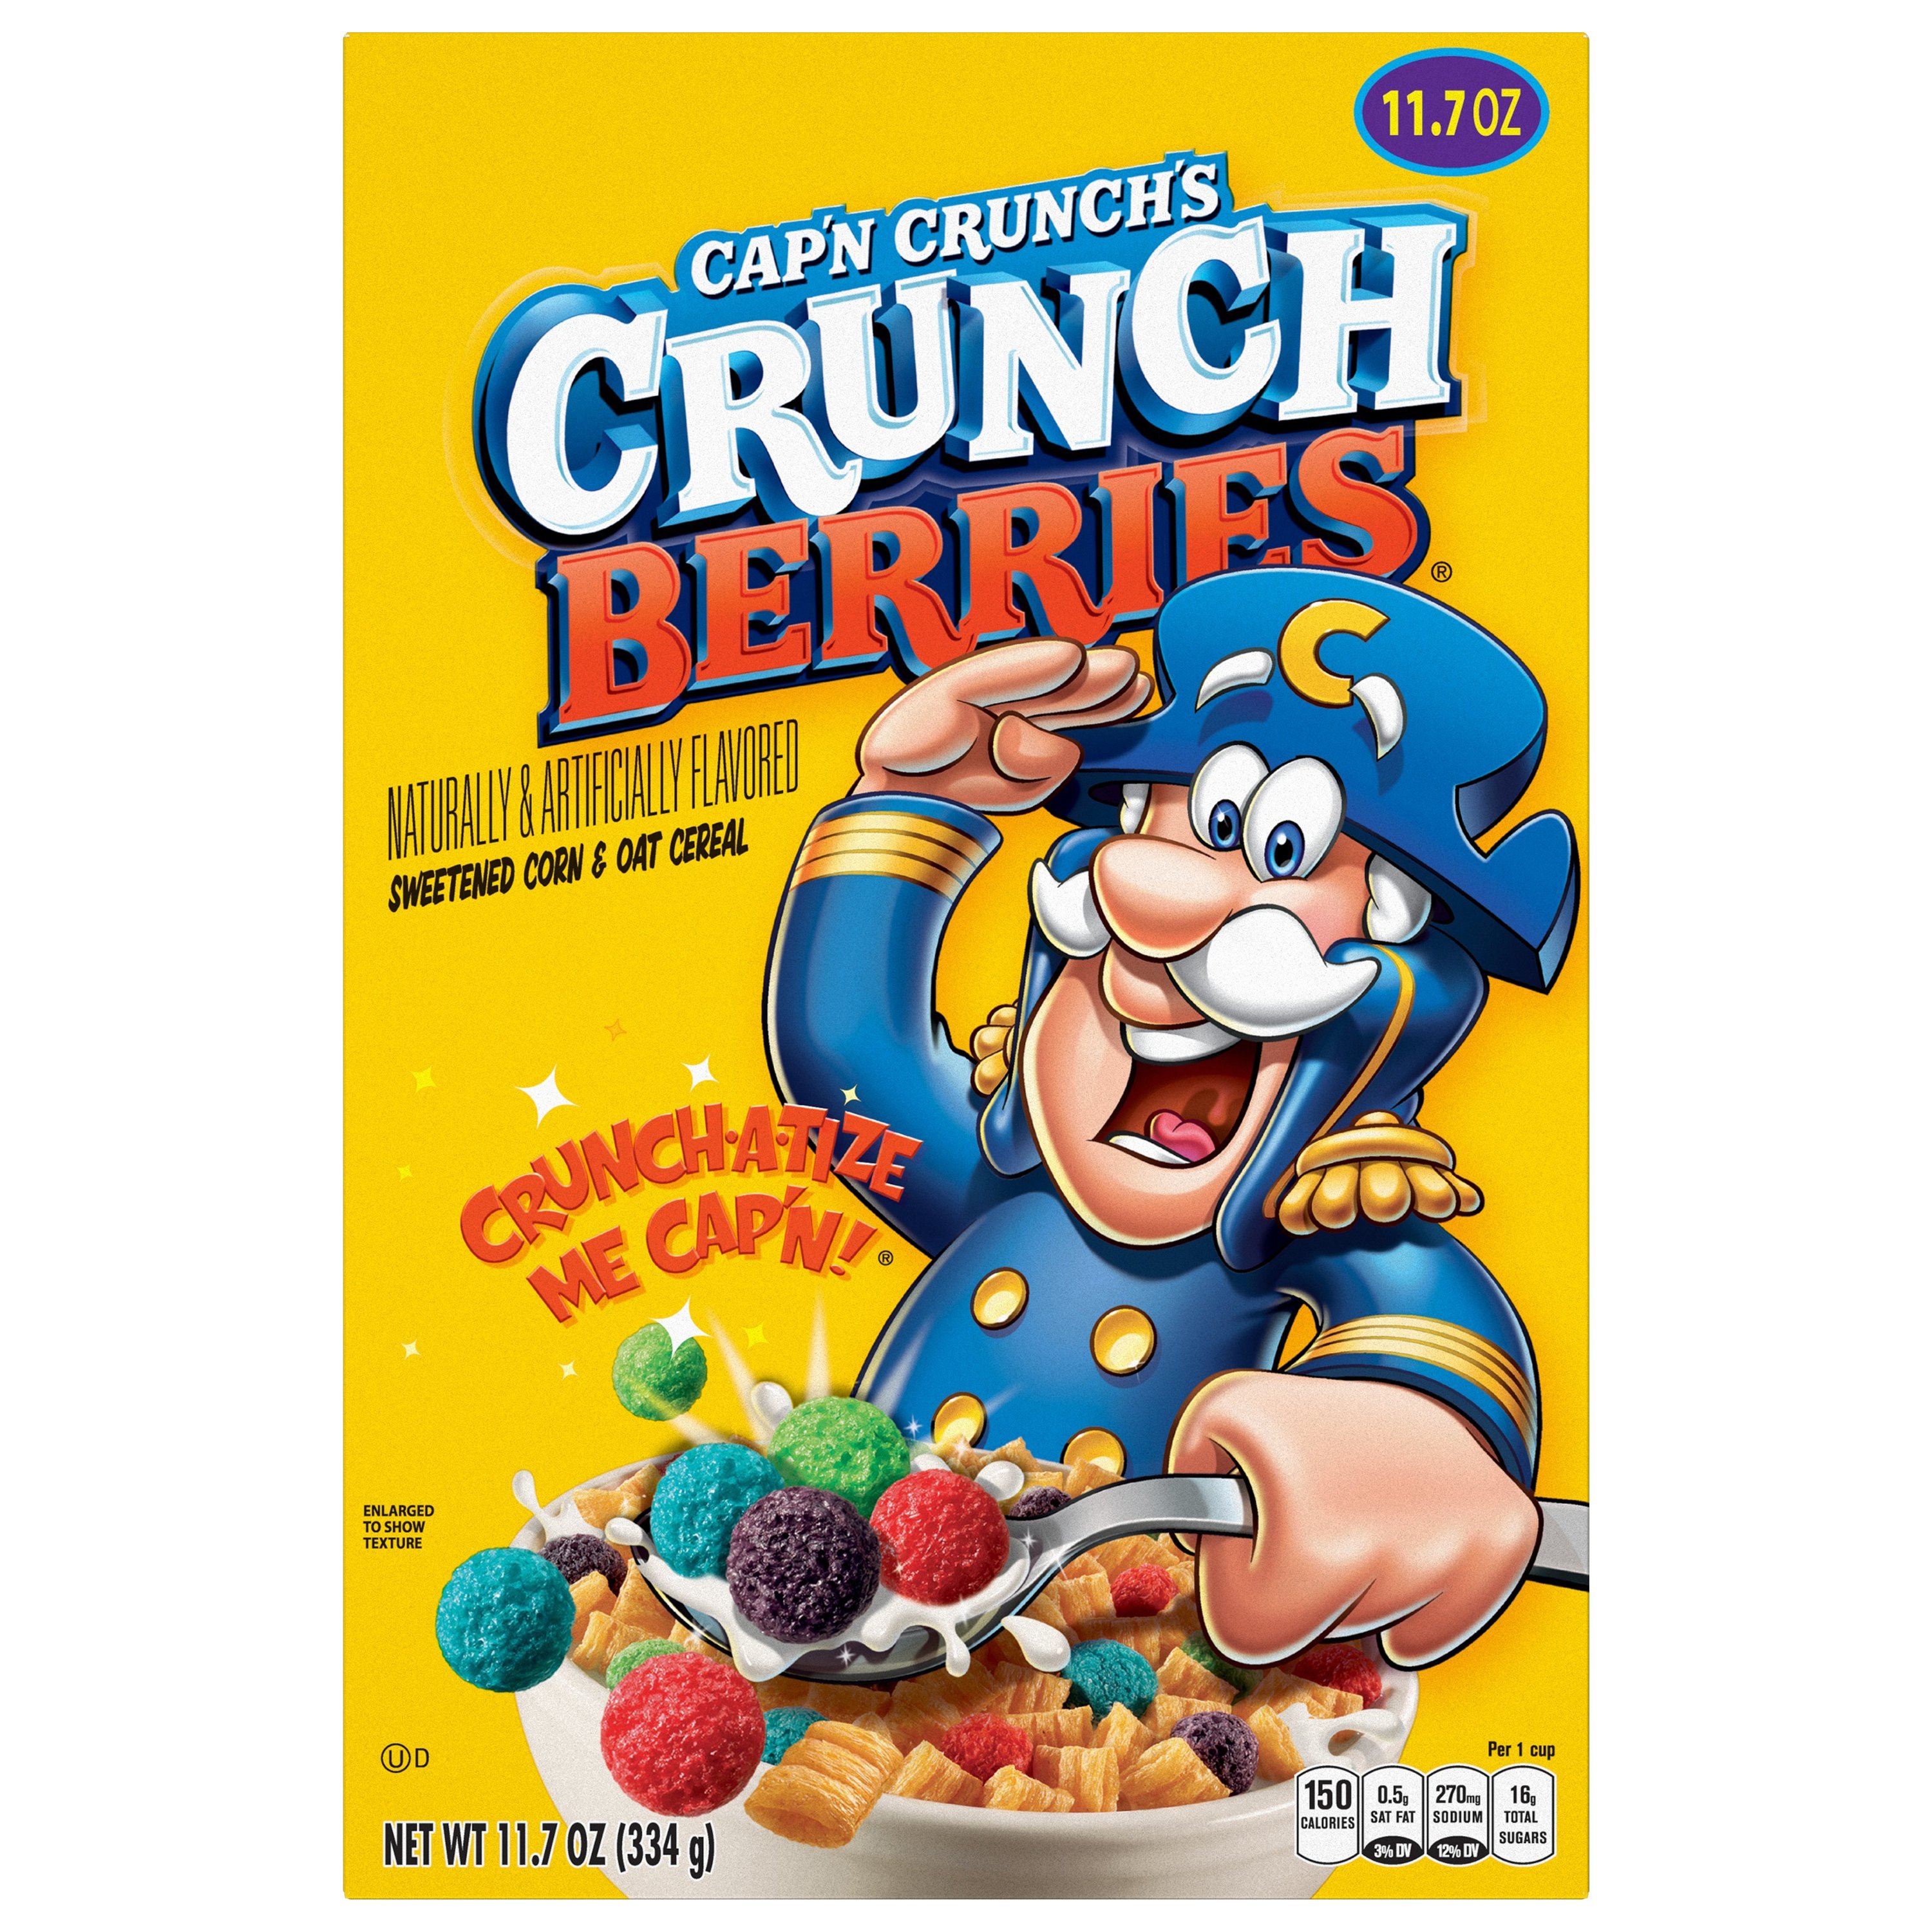 Grand filthy Prøv det Cap'n Crunch Crunch Berries Cereal - Shop Cereal at H-E-B